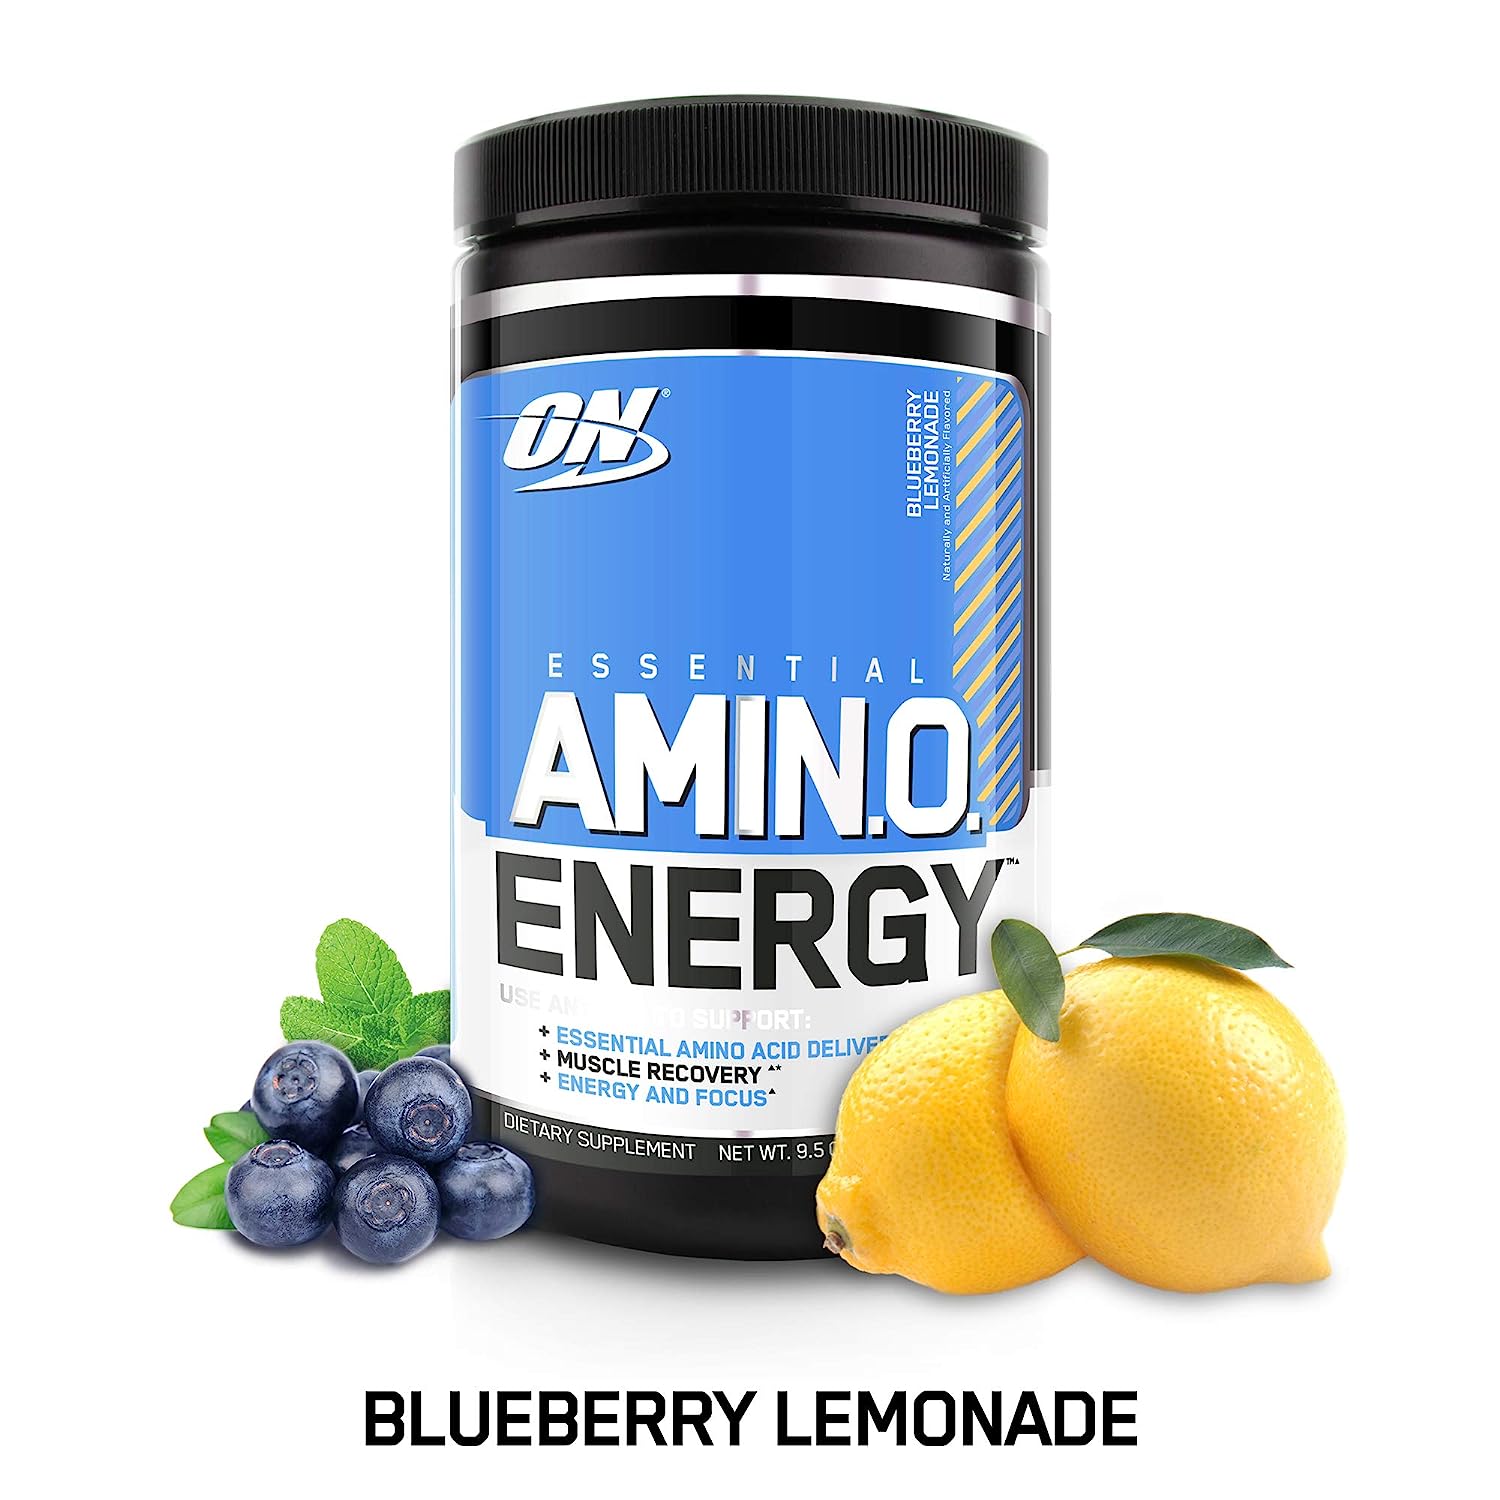 Аминокислоты nutrition. Optimum Nutrition Amino Energy (585 гр) апельсин. On Essential Amino Energy 30 serv. On - Essential Amino Energy 9,5 oz Blueberry Lemonade. Аминокислоты on черничный.